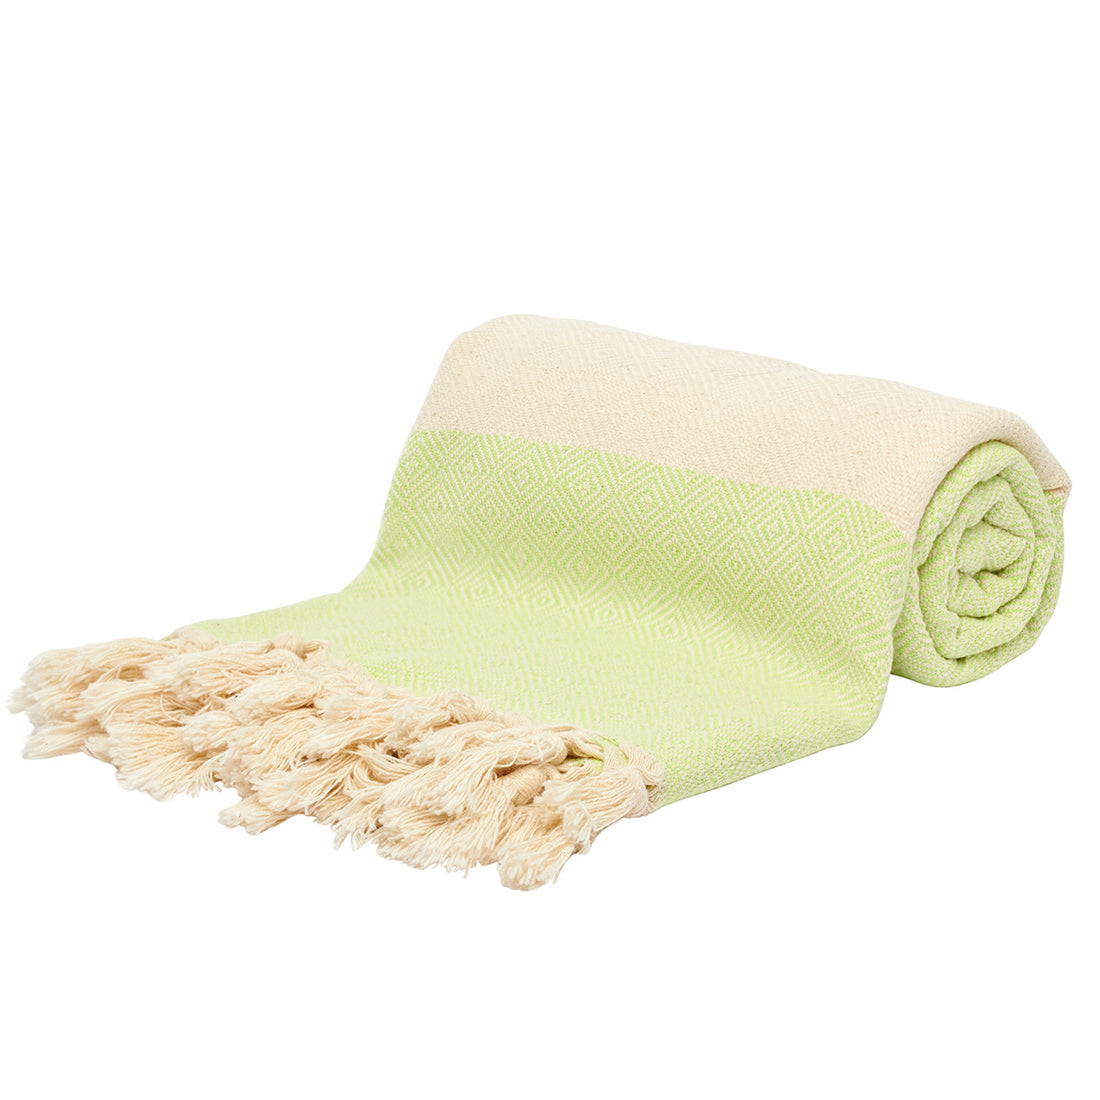 Light Green Beach Towel